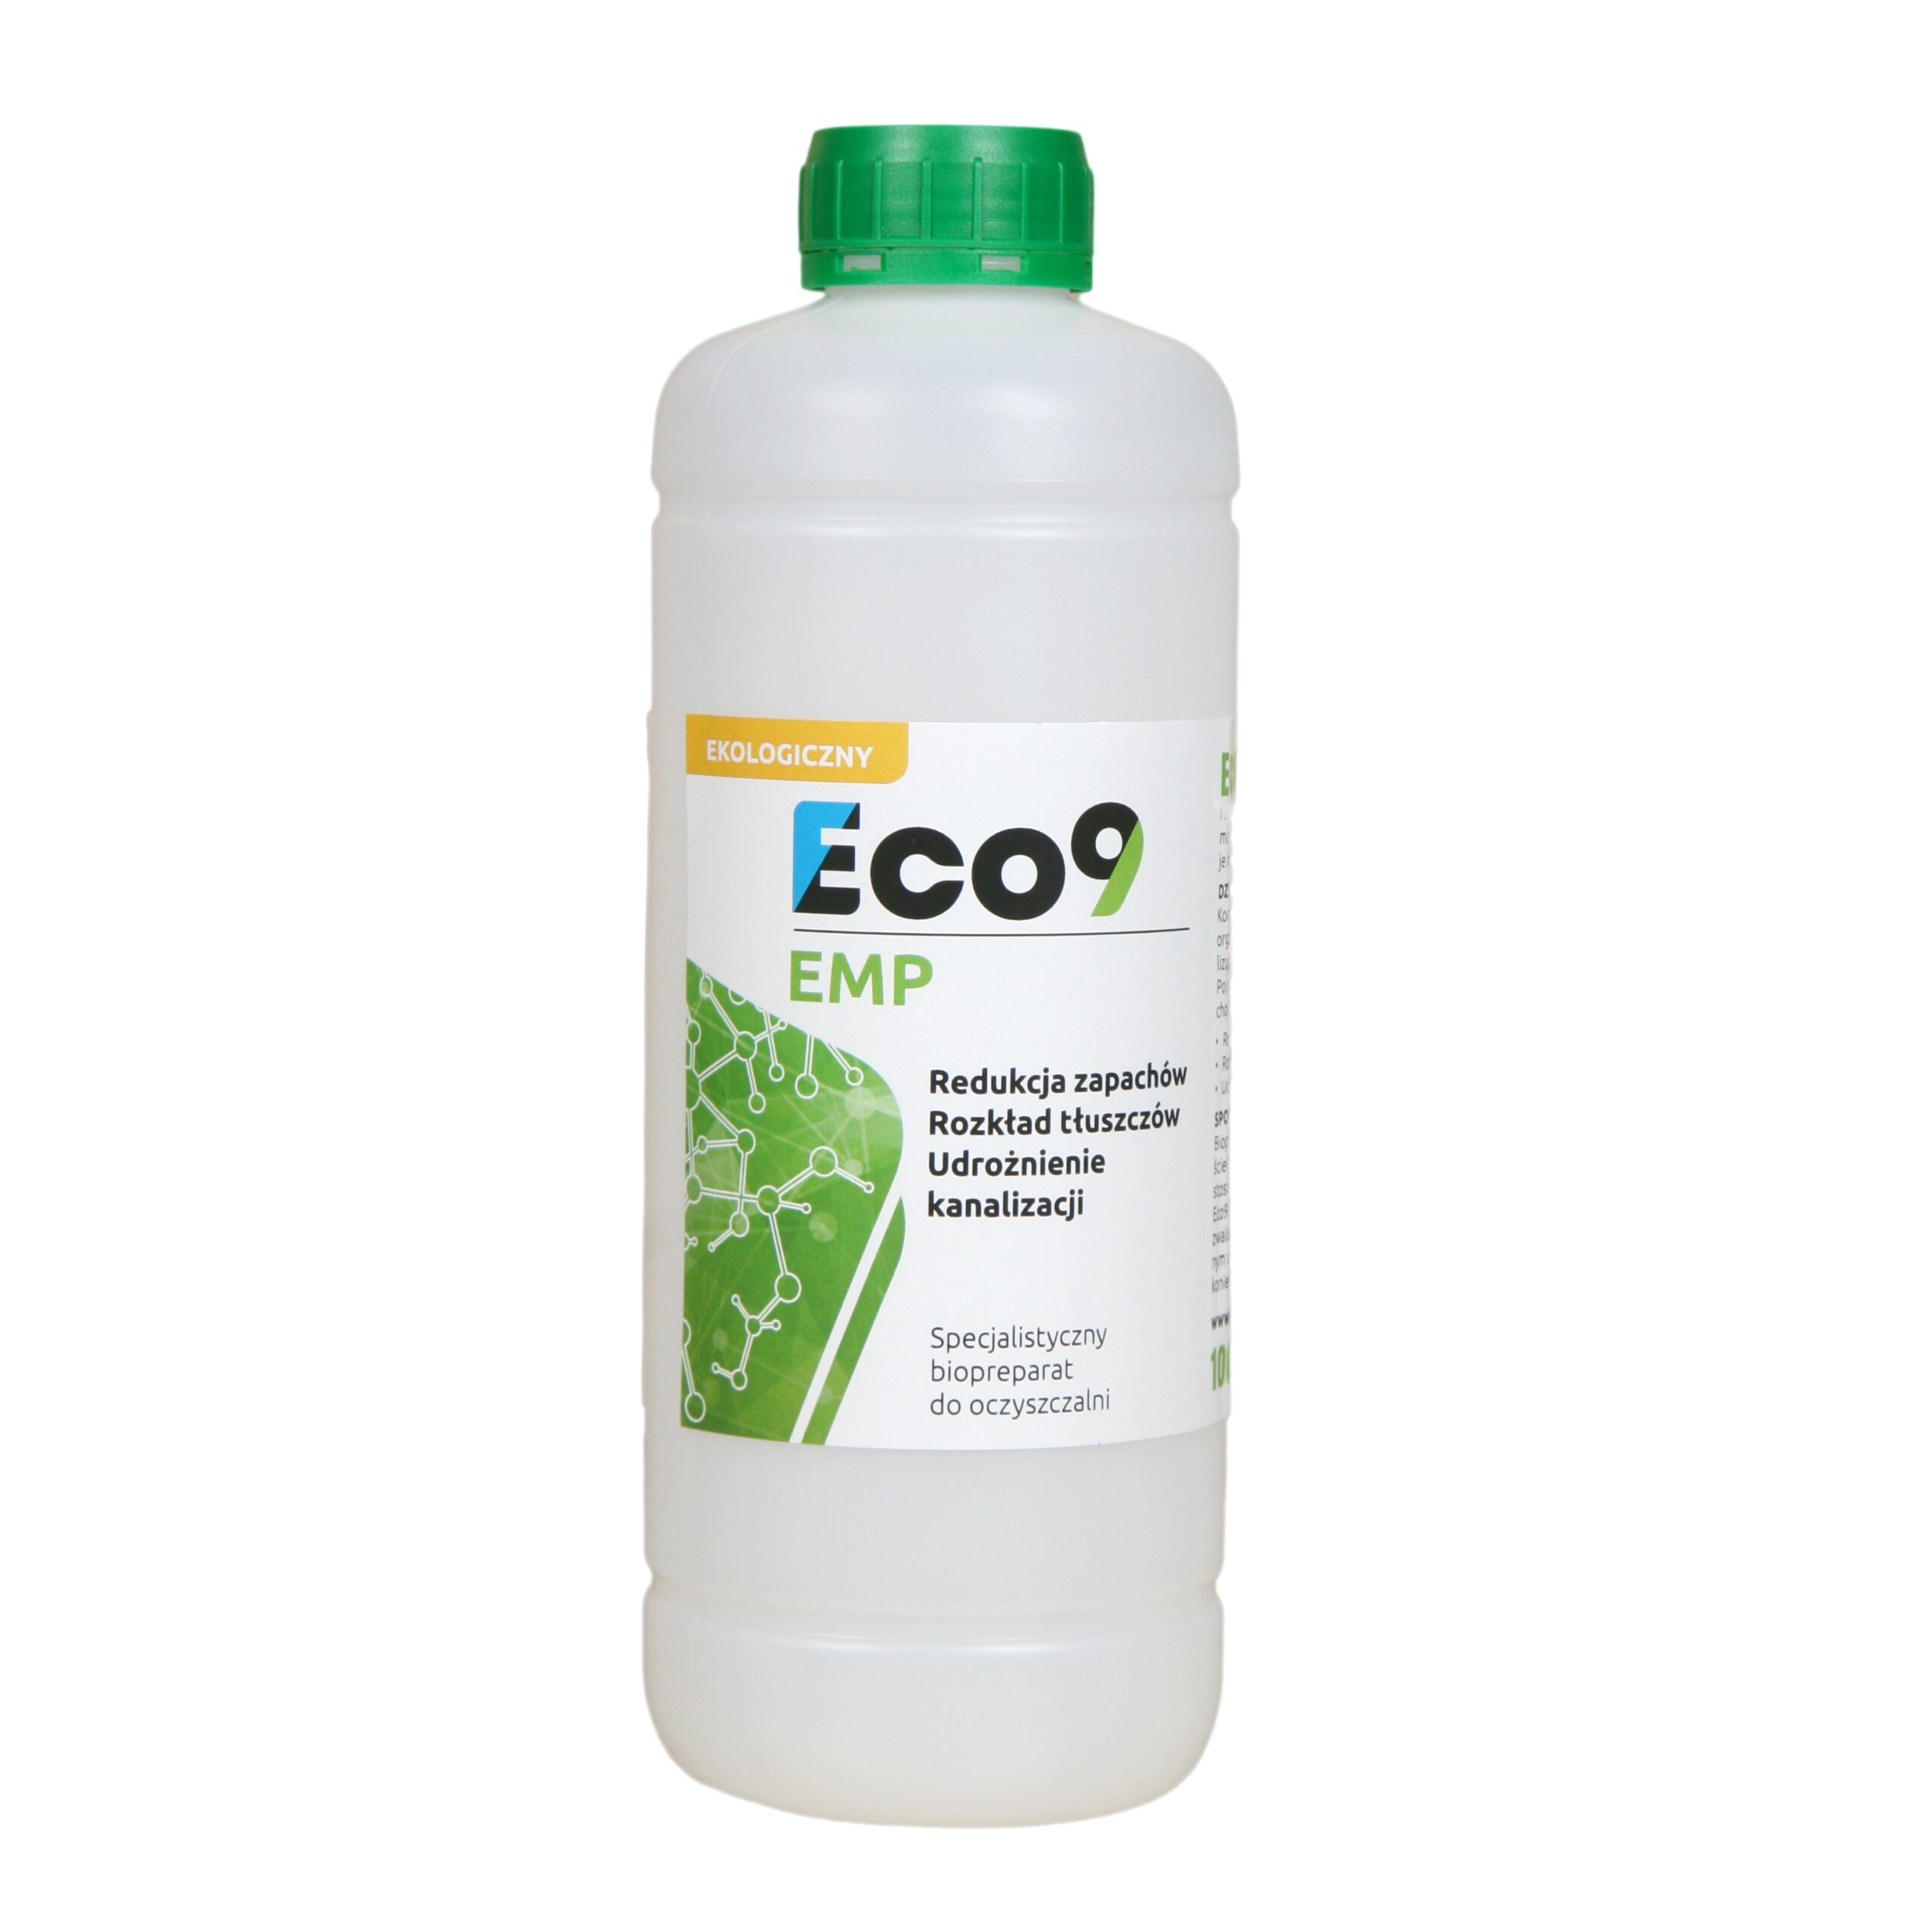 Eco9 EMP Udrożnianie kanalizacji 1000ml – blokuje zagniwanie ścieków